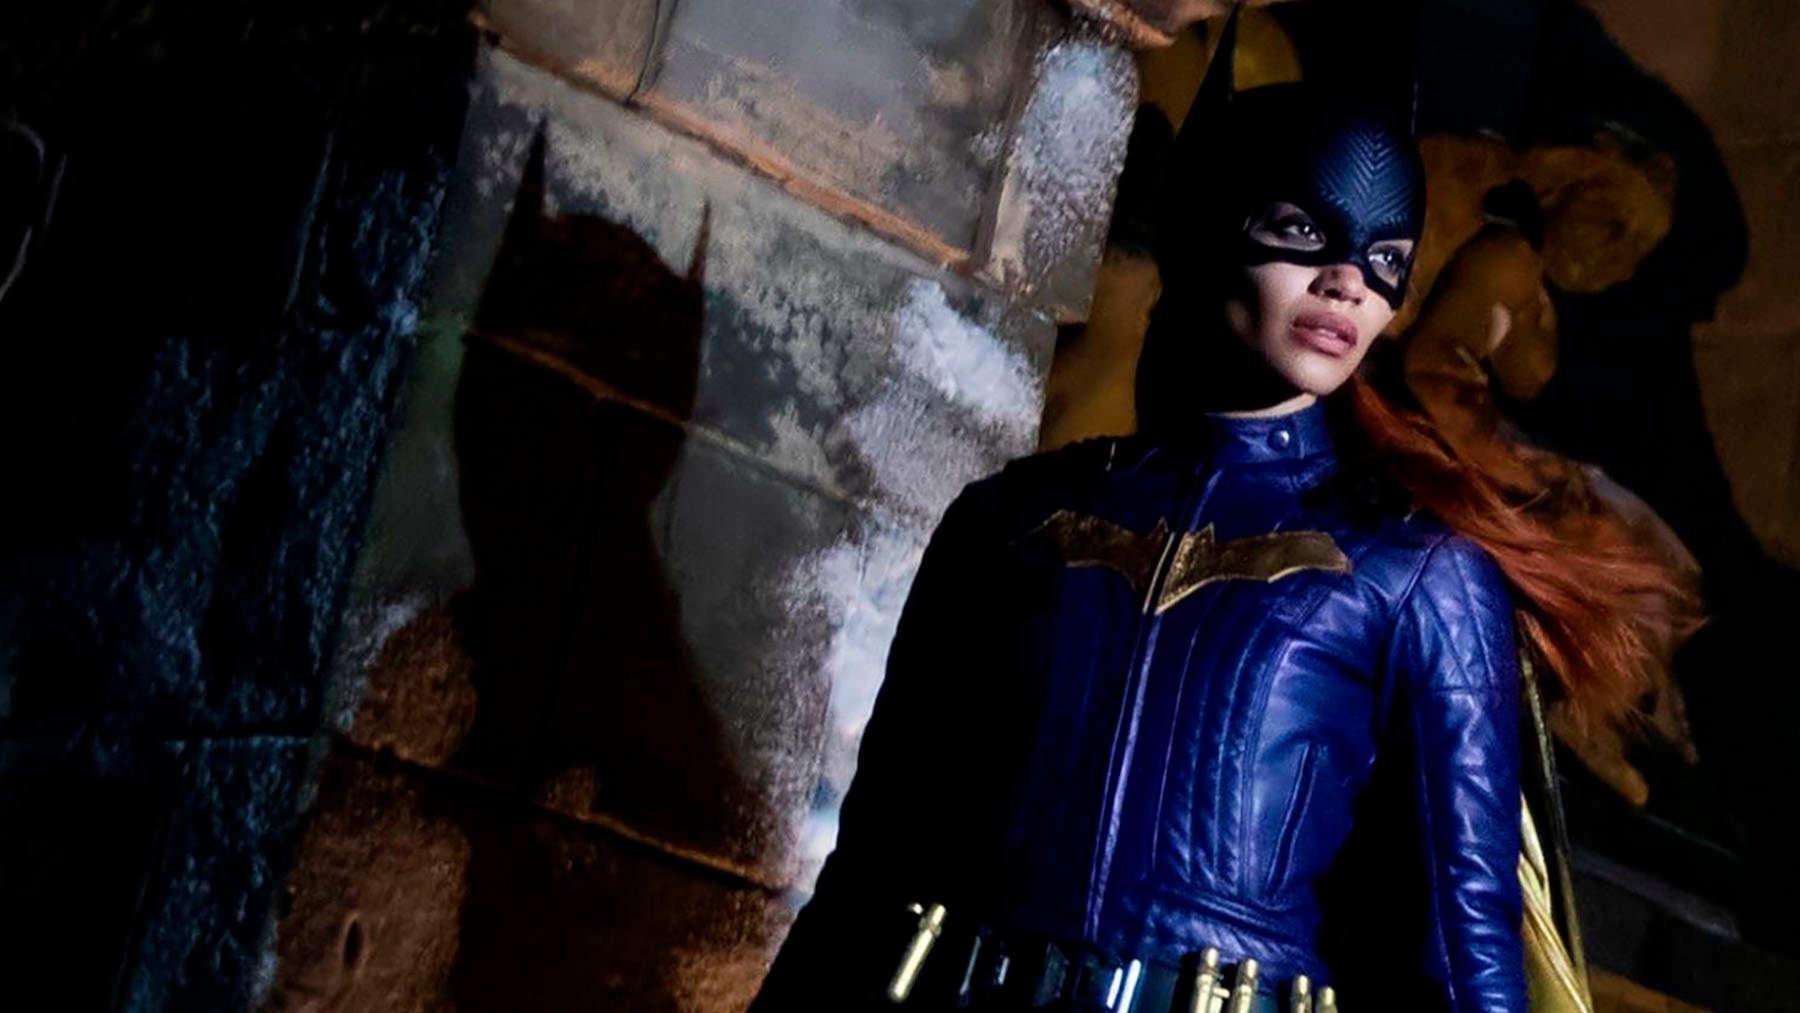 ‘Batgirl’ no se estrenará, a pesar de haber costado 90 millones y estar terminada